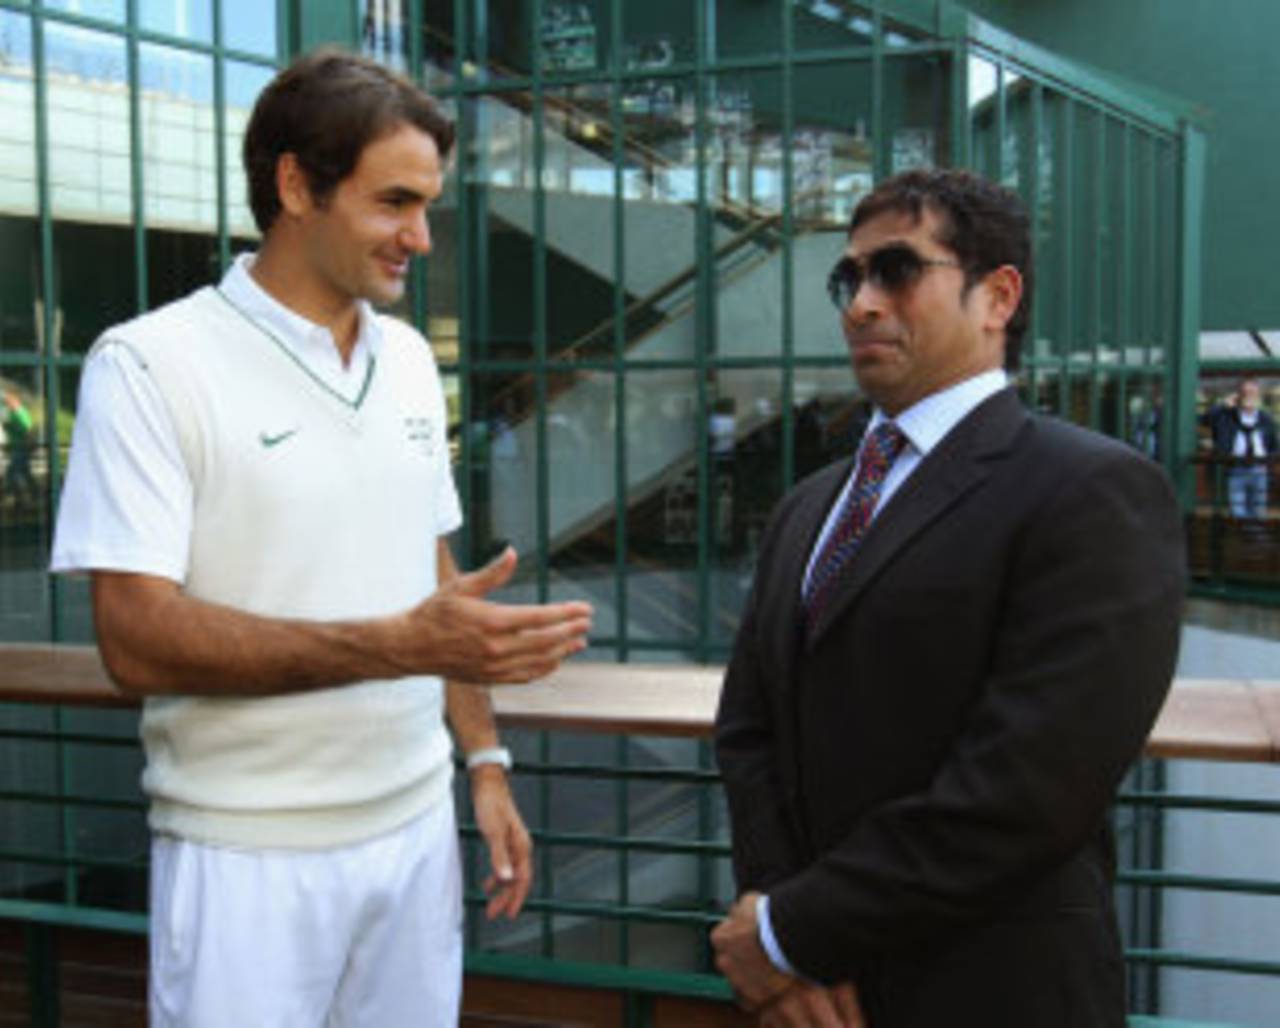 Roger Federer, a cricket fan who has also played a bit at Wimbledon&nbsp;&nbsp;&bull;&nbsp;&nbsp;Getty Images